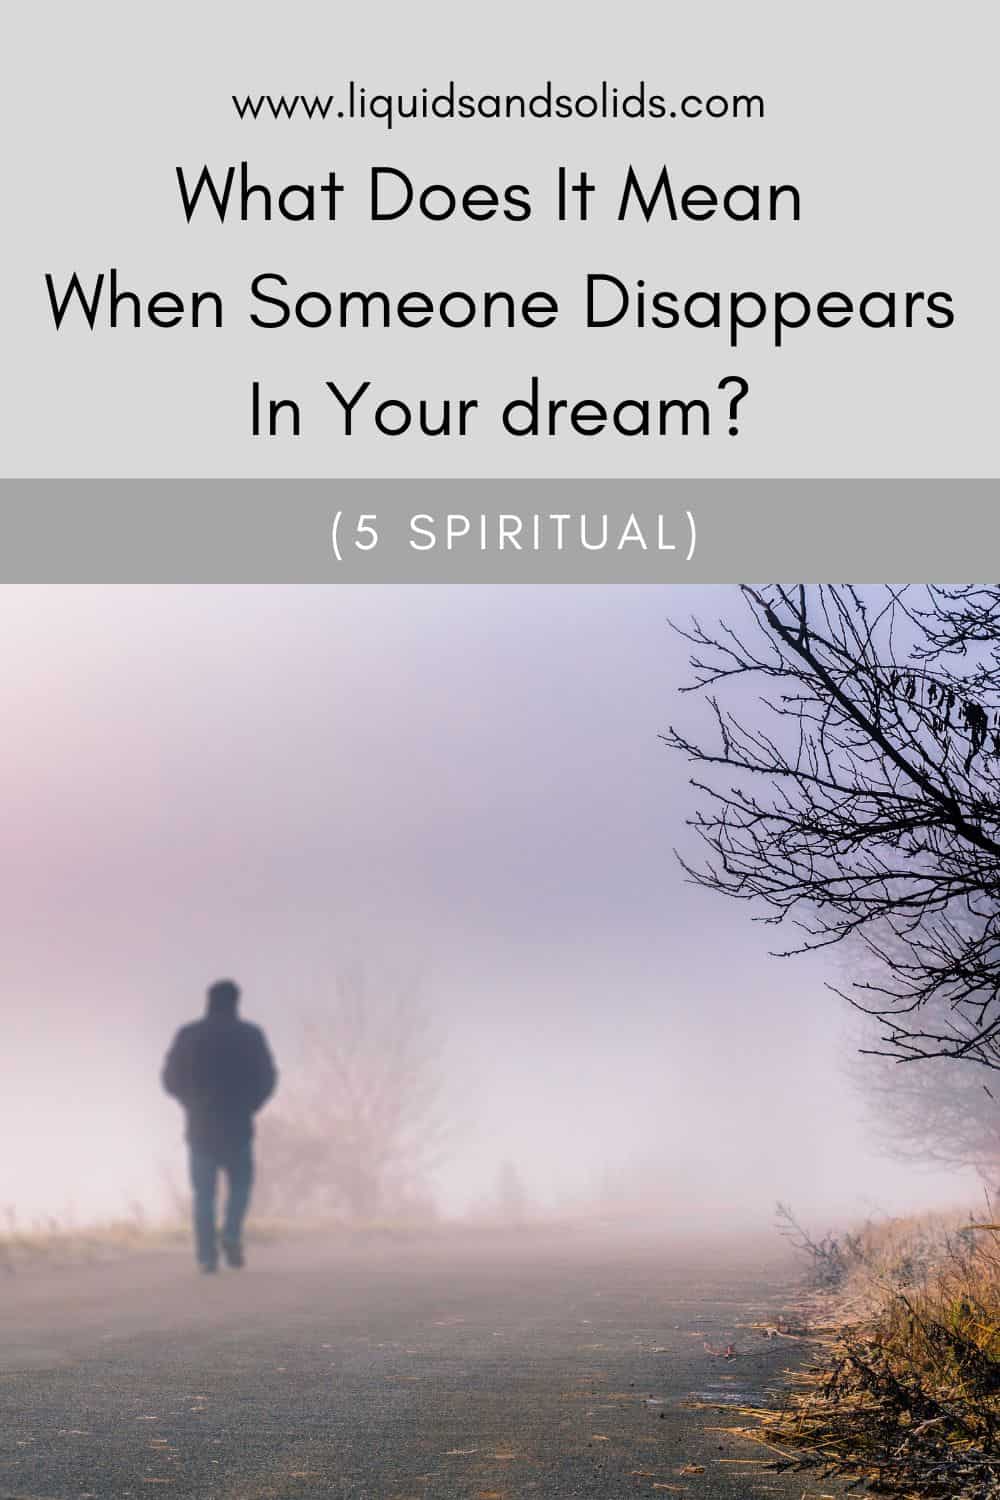  Mida tähendab see, kui keegi teie unenäos kaob? (5 vaimset tähendust)